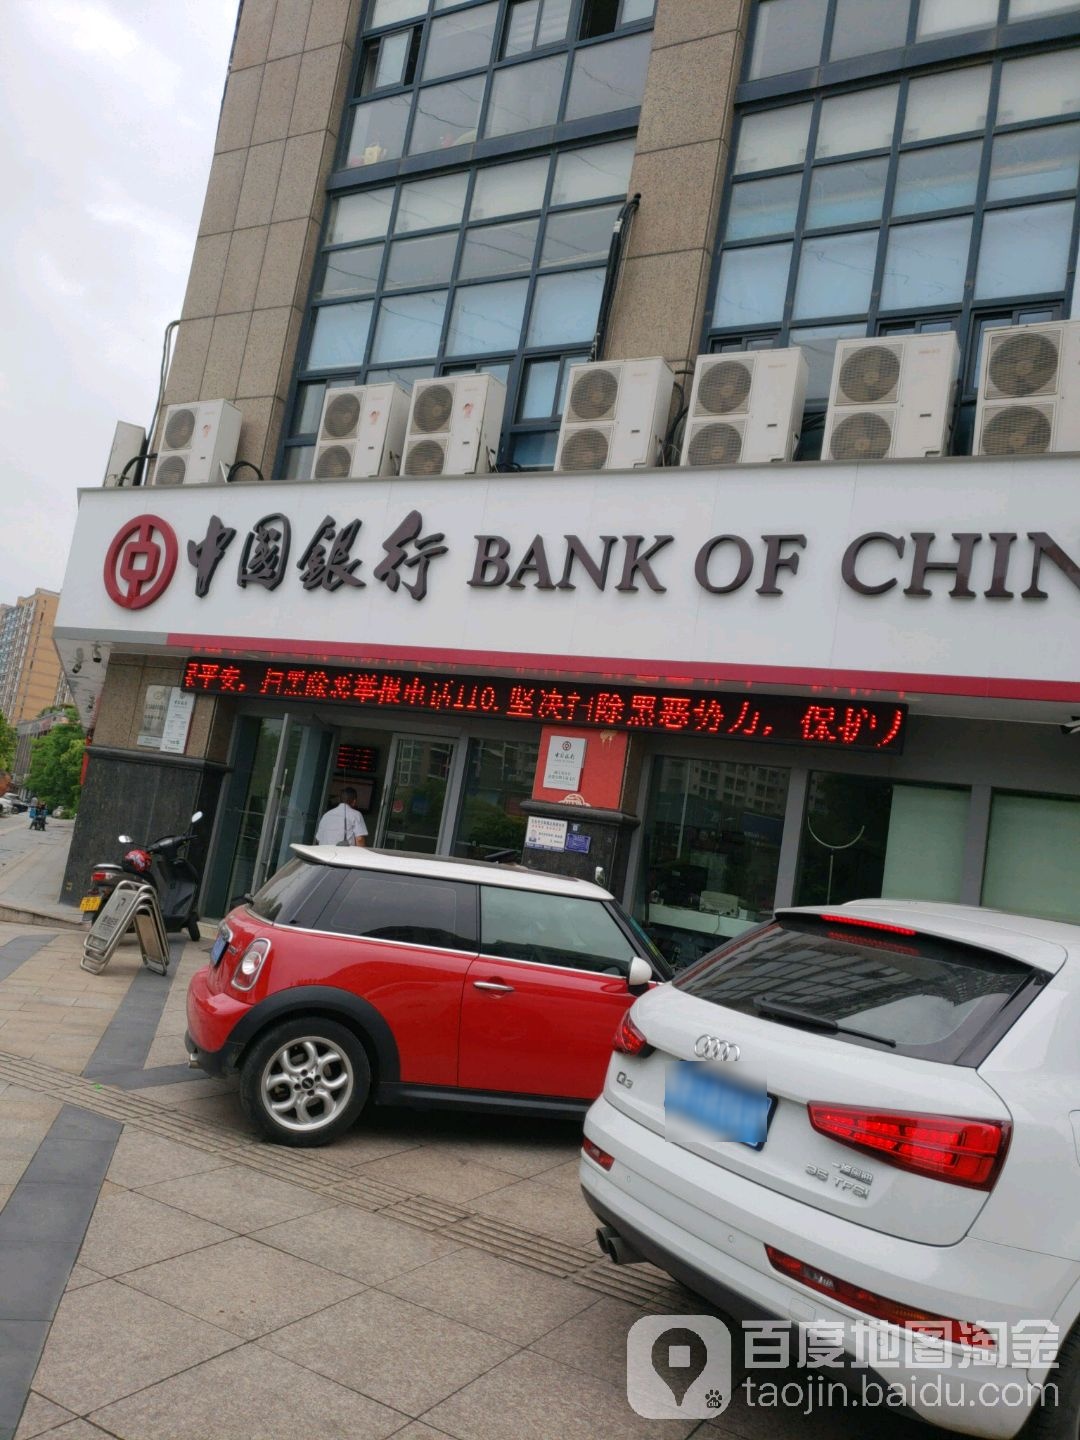 中国银行(浙江自贸区义乌支行)